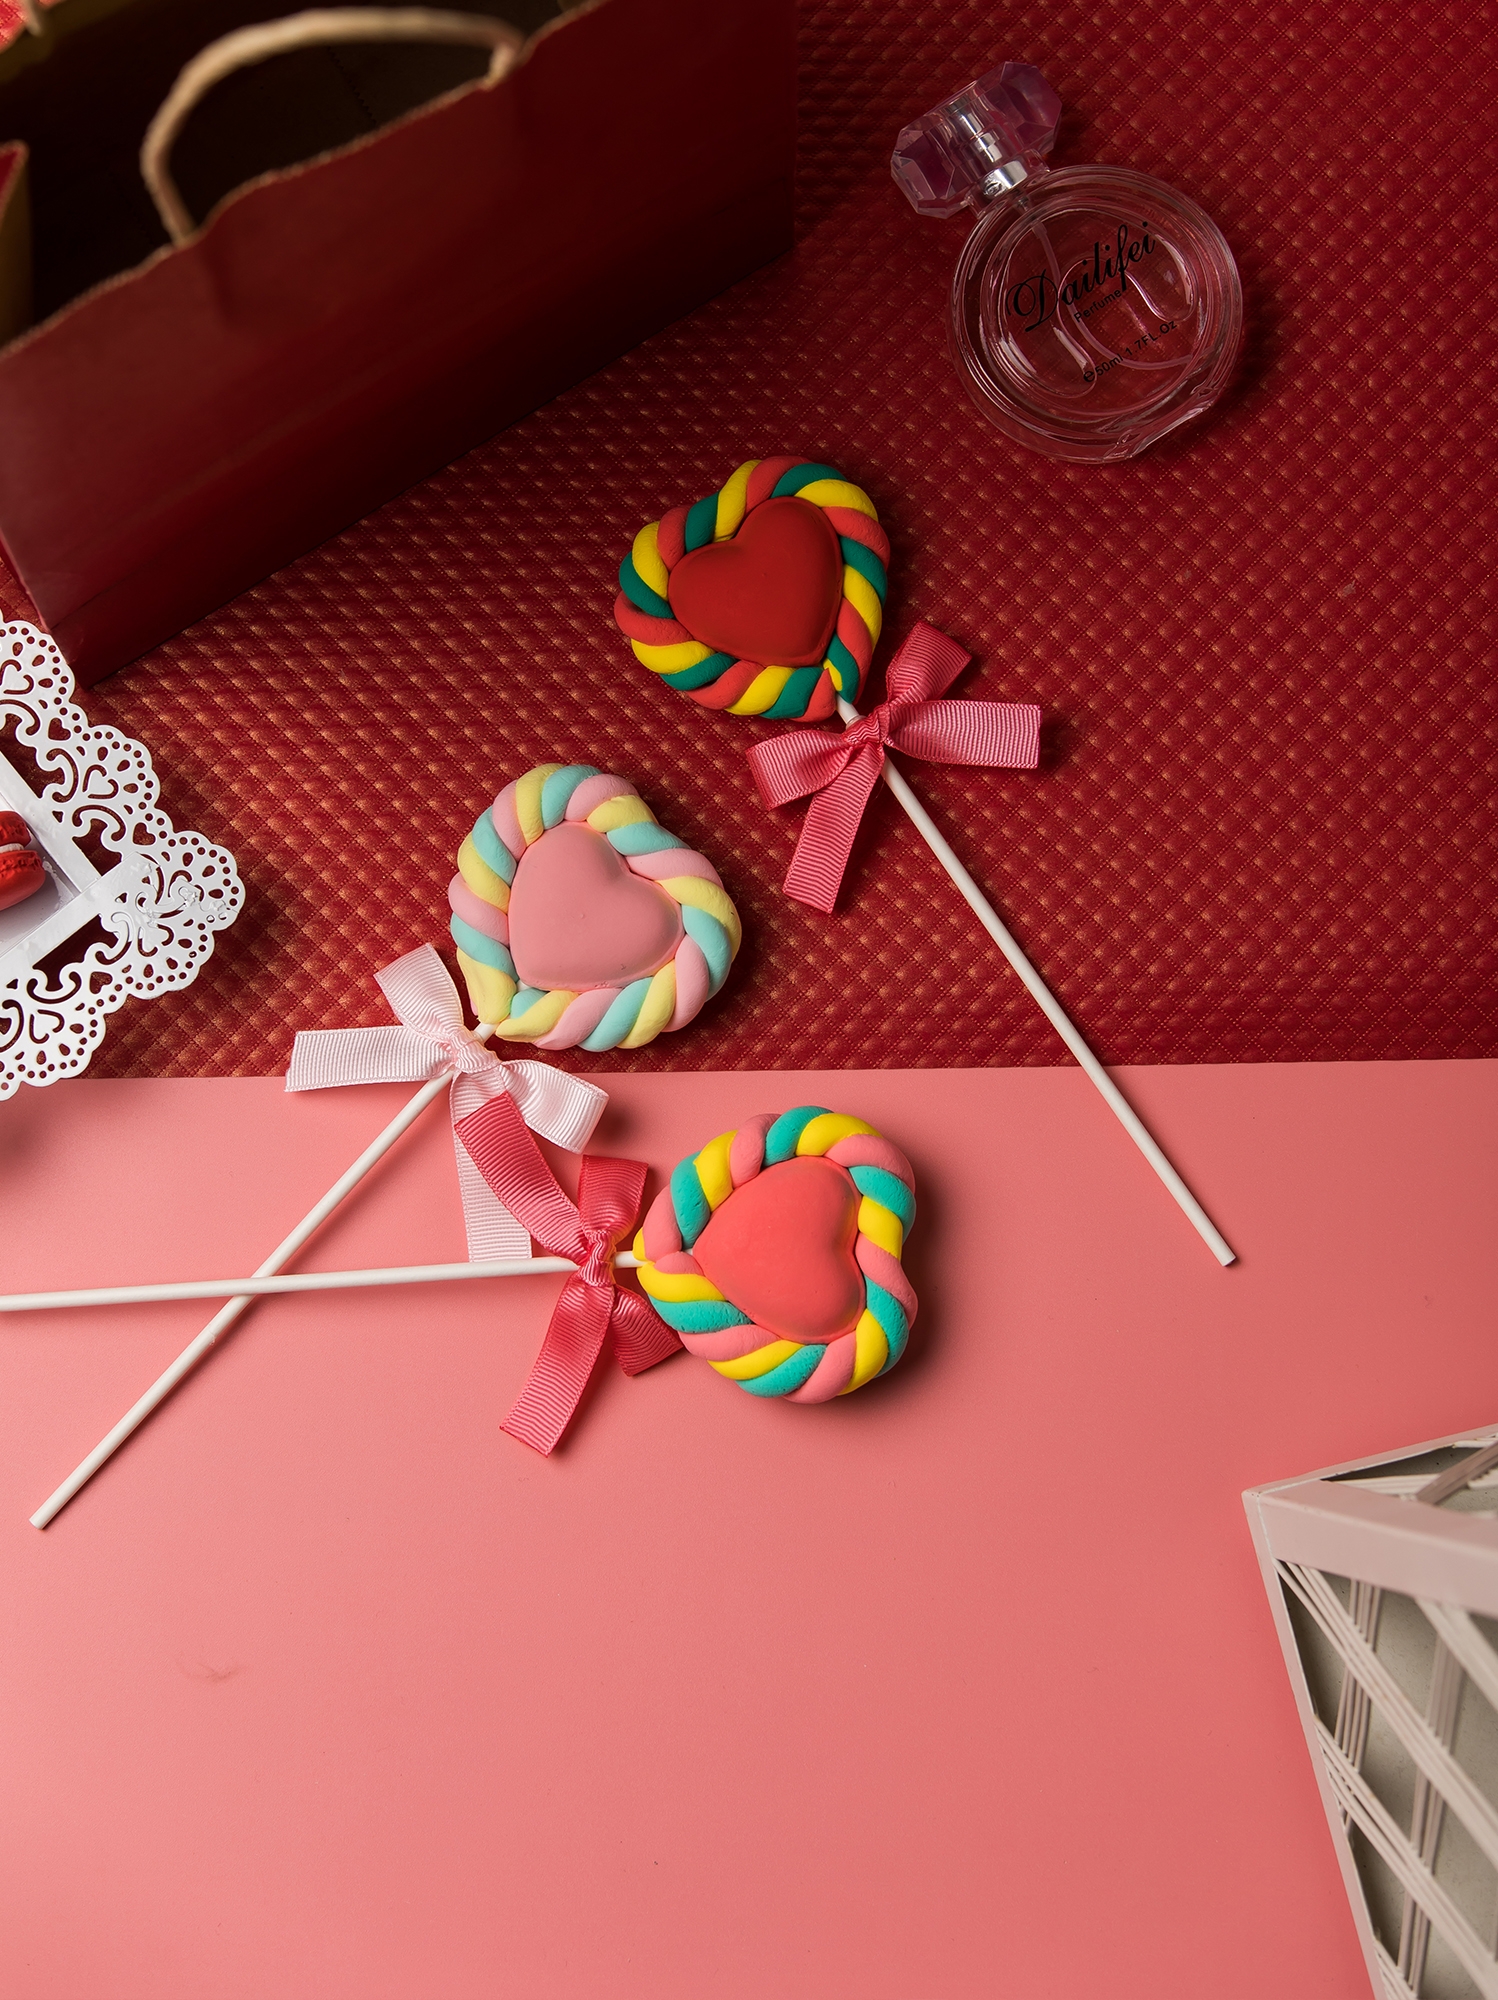 愛心棉花棒棒糖假糖果甜品裝飾擺設拍攝道具